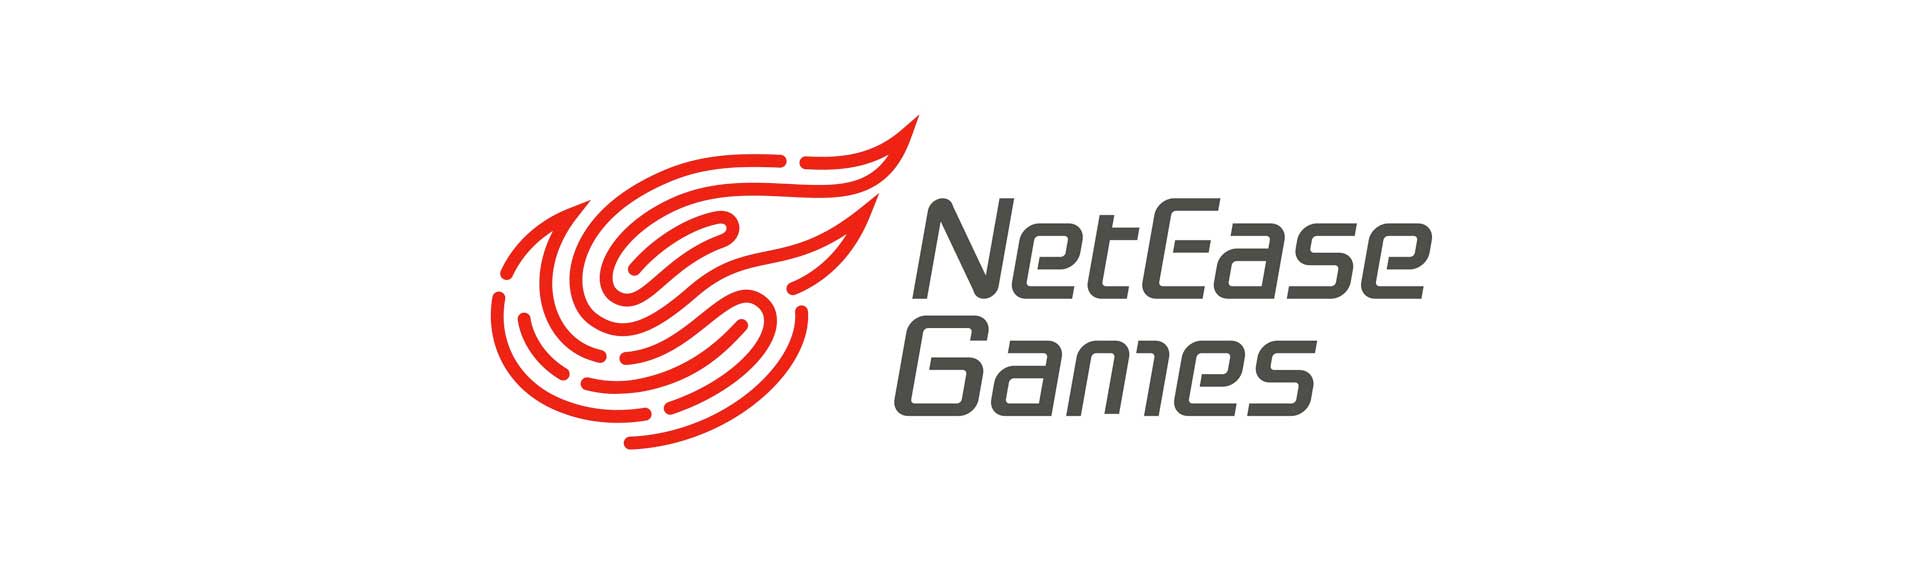 لوگو شرکت چینی Netease در دنیای بازی های ویدیویی